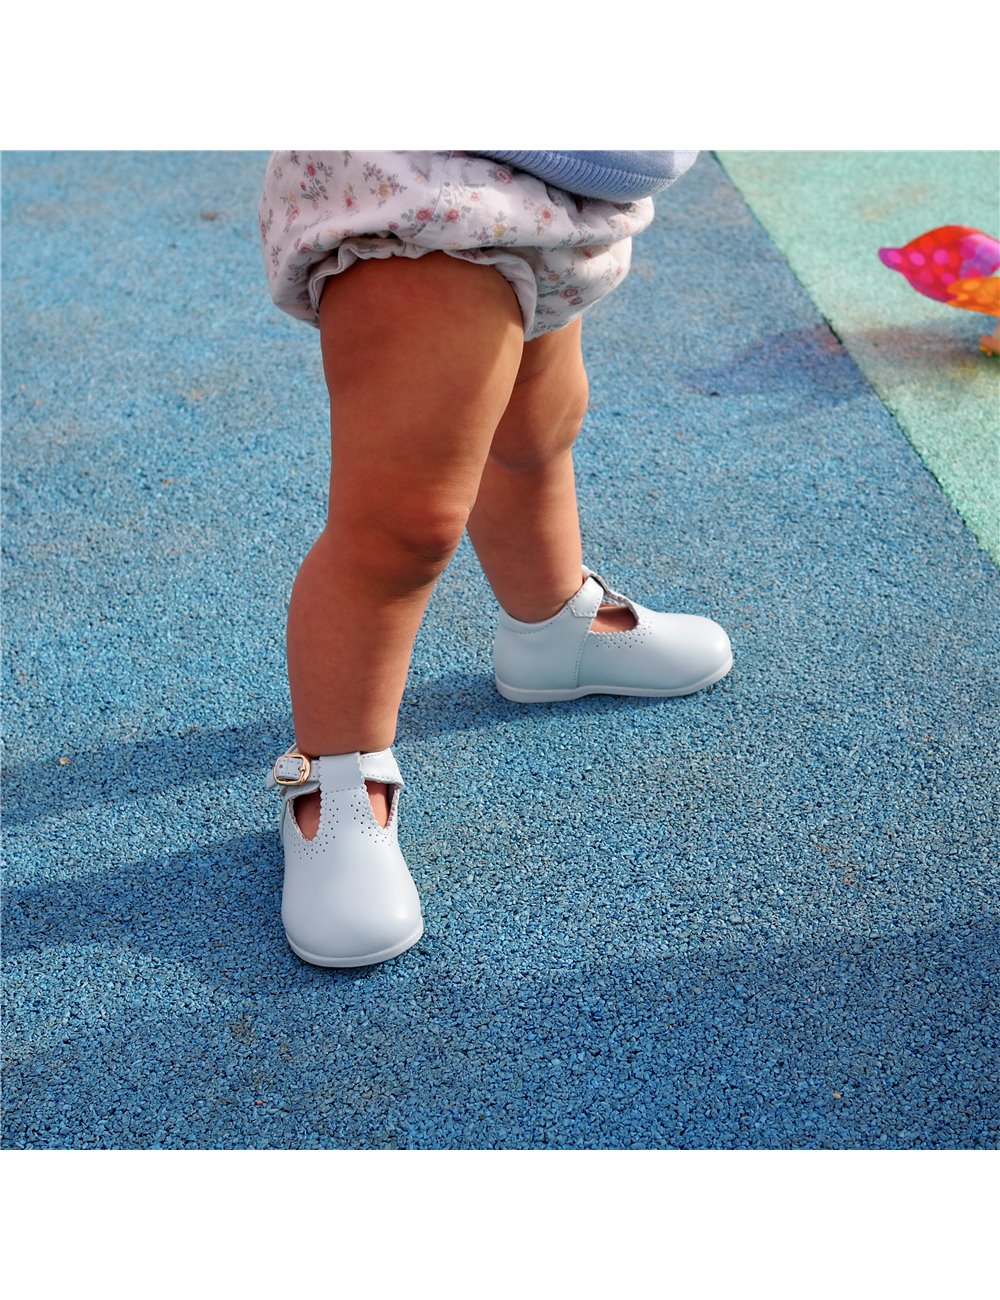 Zapatos de flamenco para niñas con glitter de Bubble Kids 1169.